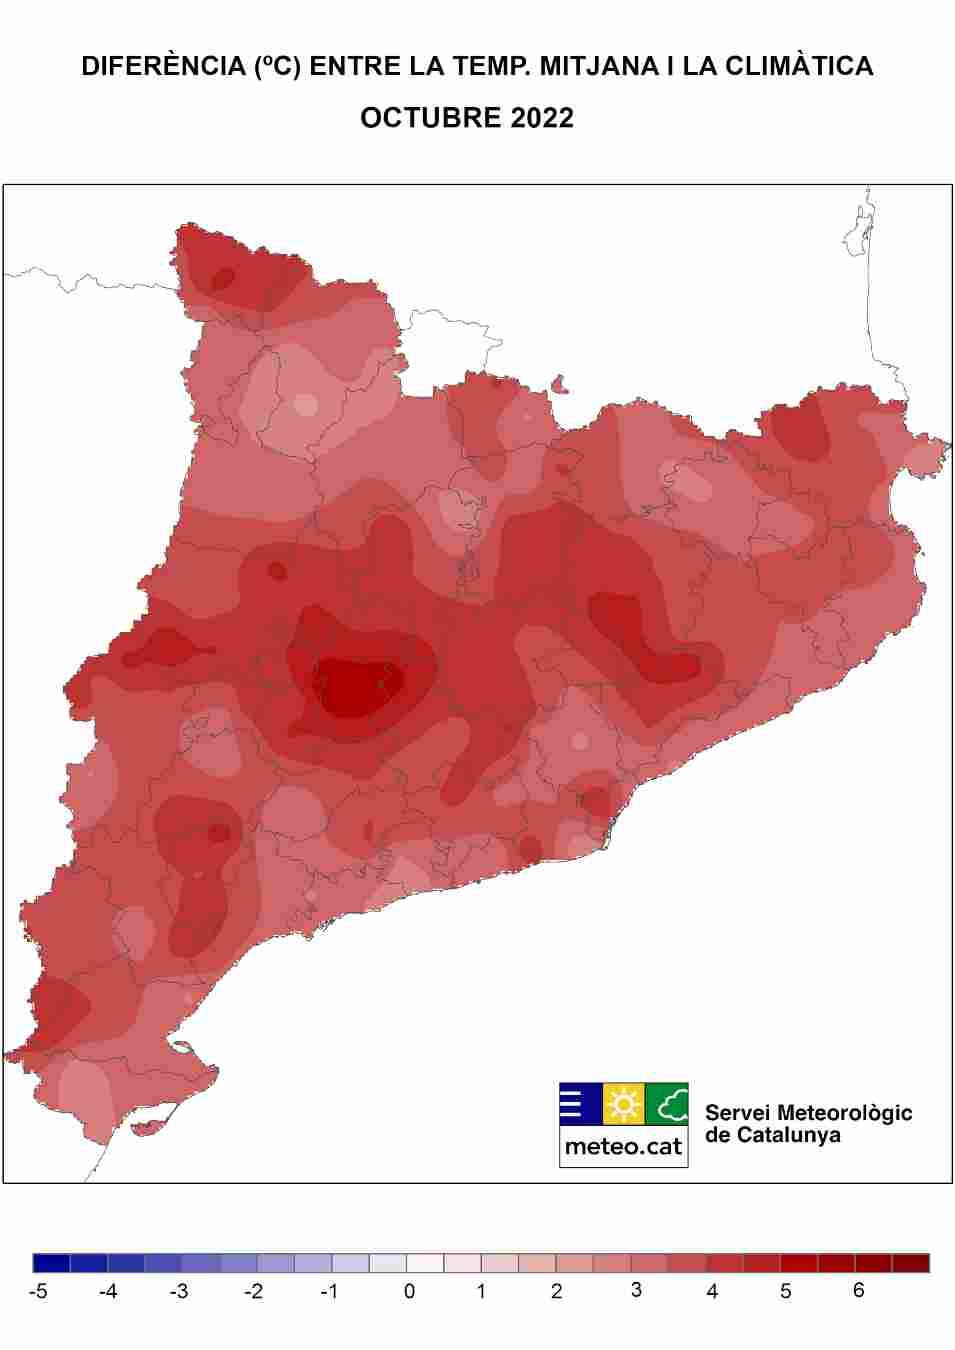 La temperatura de este octubre ha sido la más alta que nunca se había observado en Catalunya / Fuente: Servicio Meteorológico de Catalunya